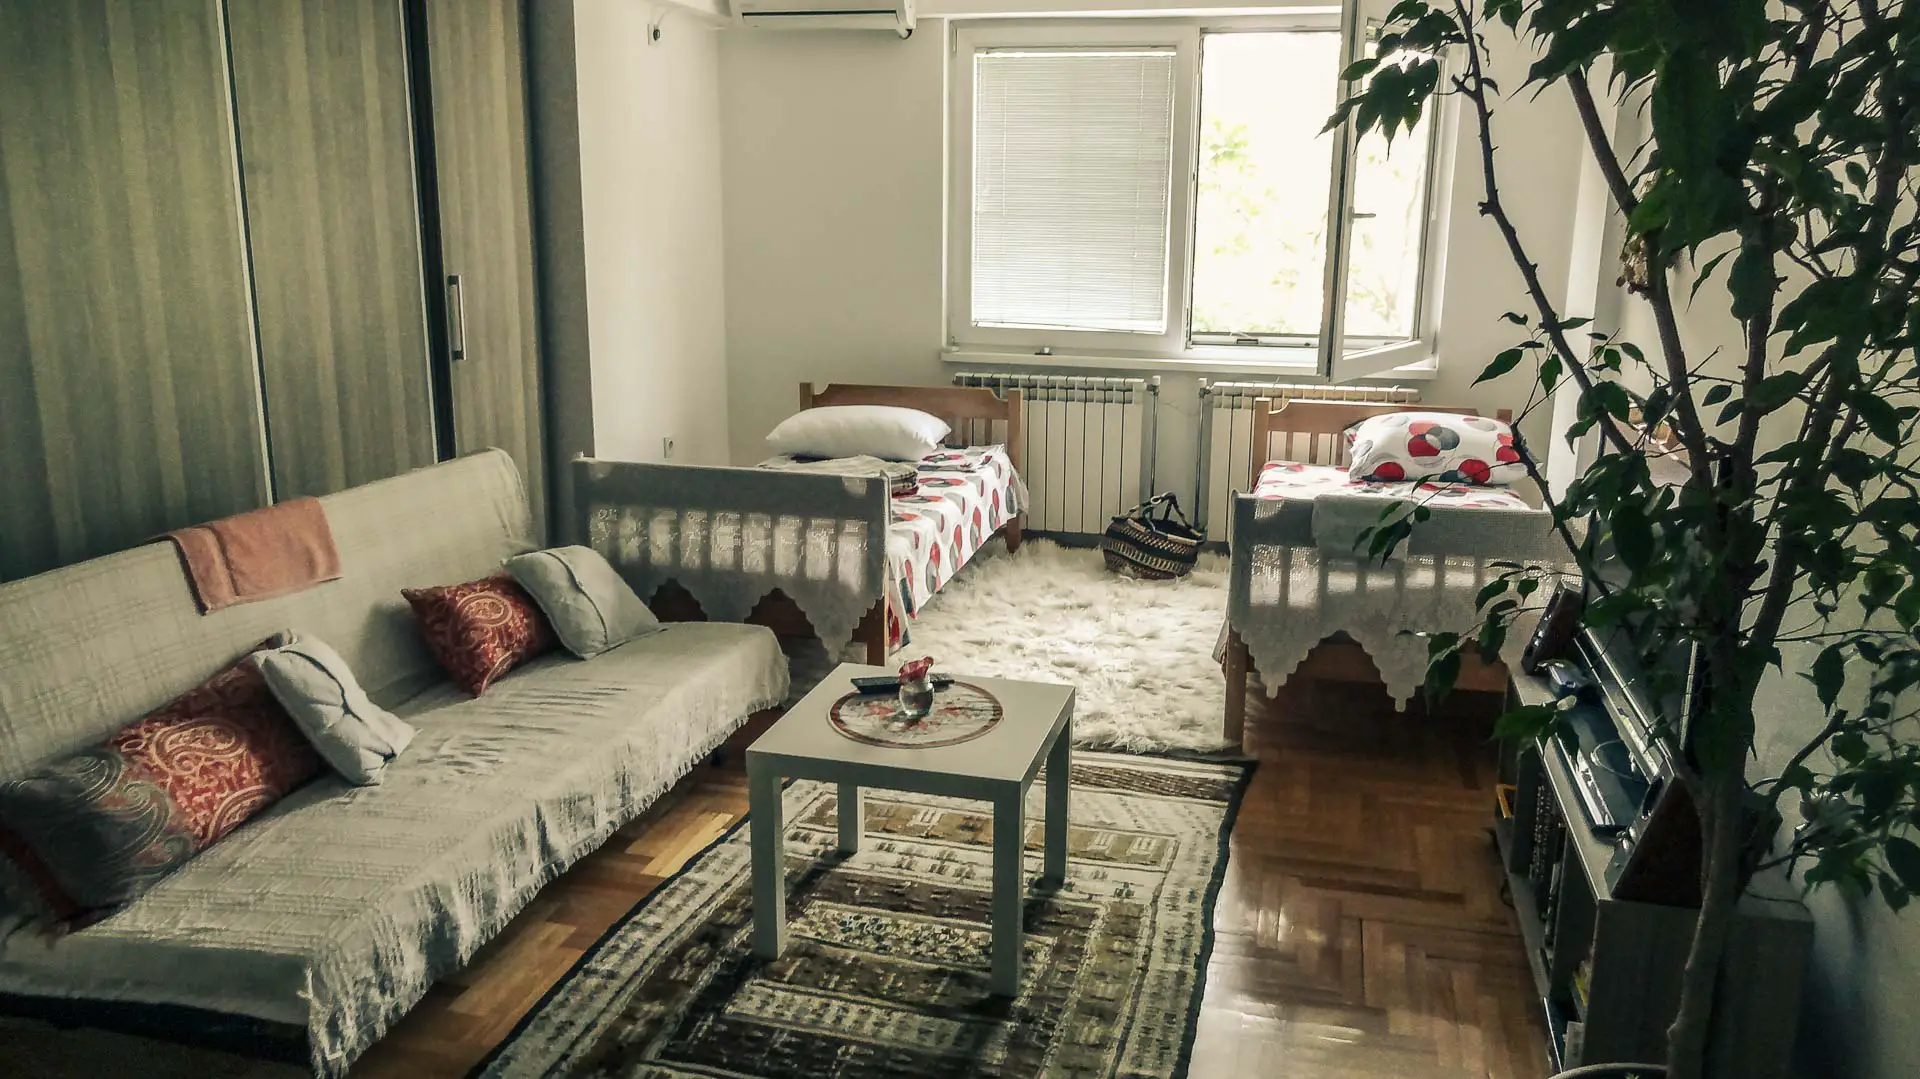 onze airbnb in skopje, macedonie